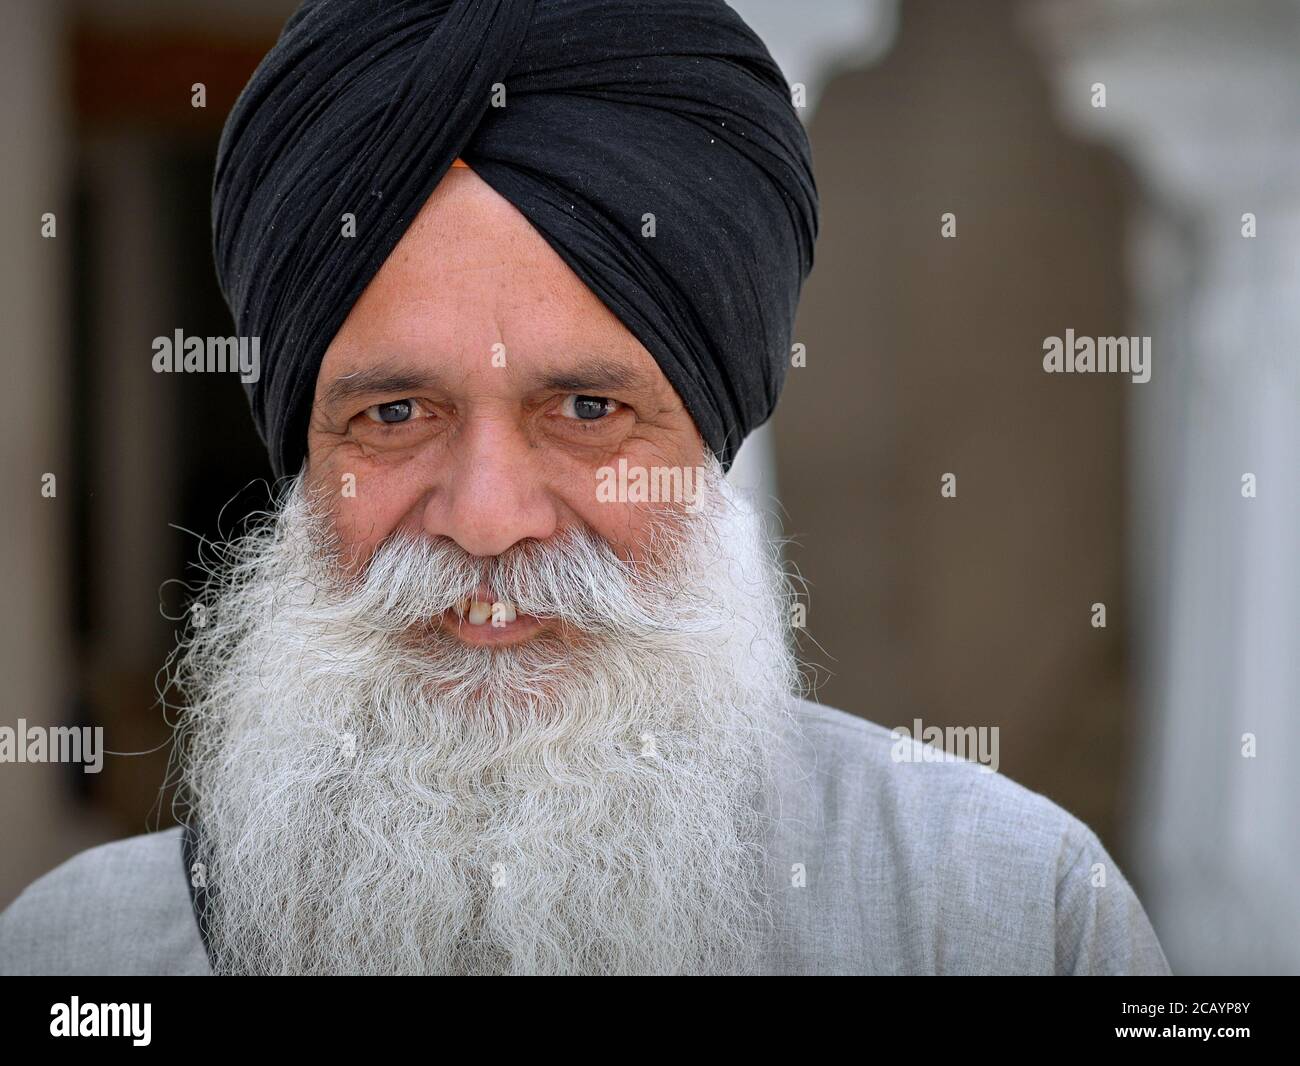 Le dévot de Sikh indien âgé avec une barbe blanche et des yeux souriants porte un turban noir (dastar) et regarde dans la caméra. Banque D'Images